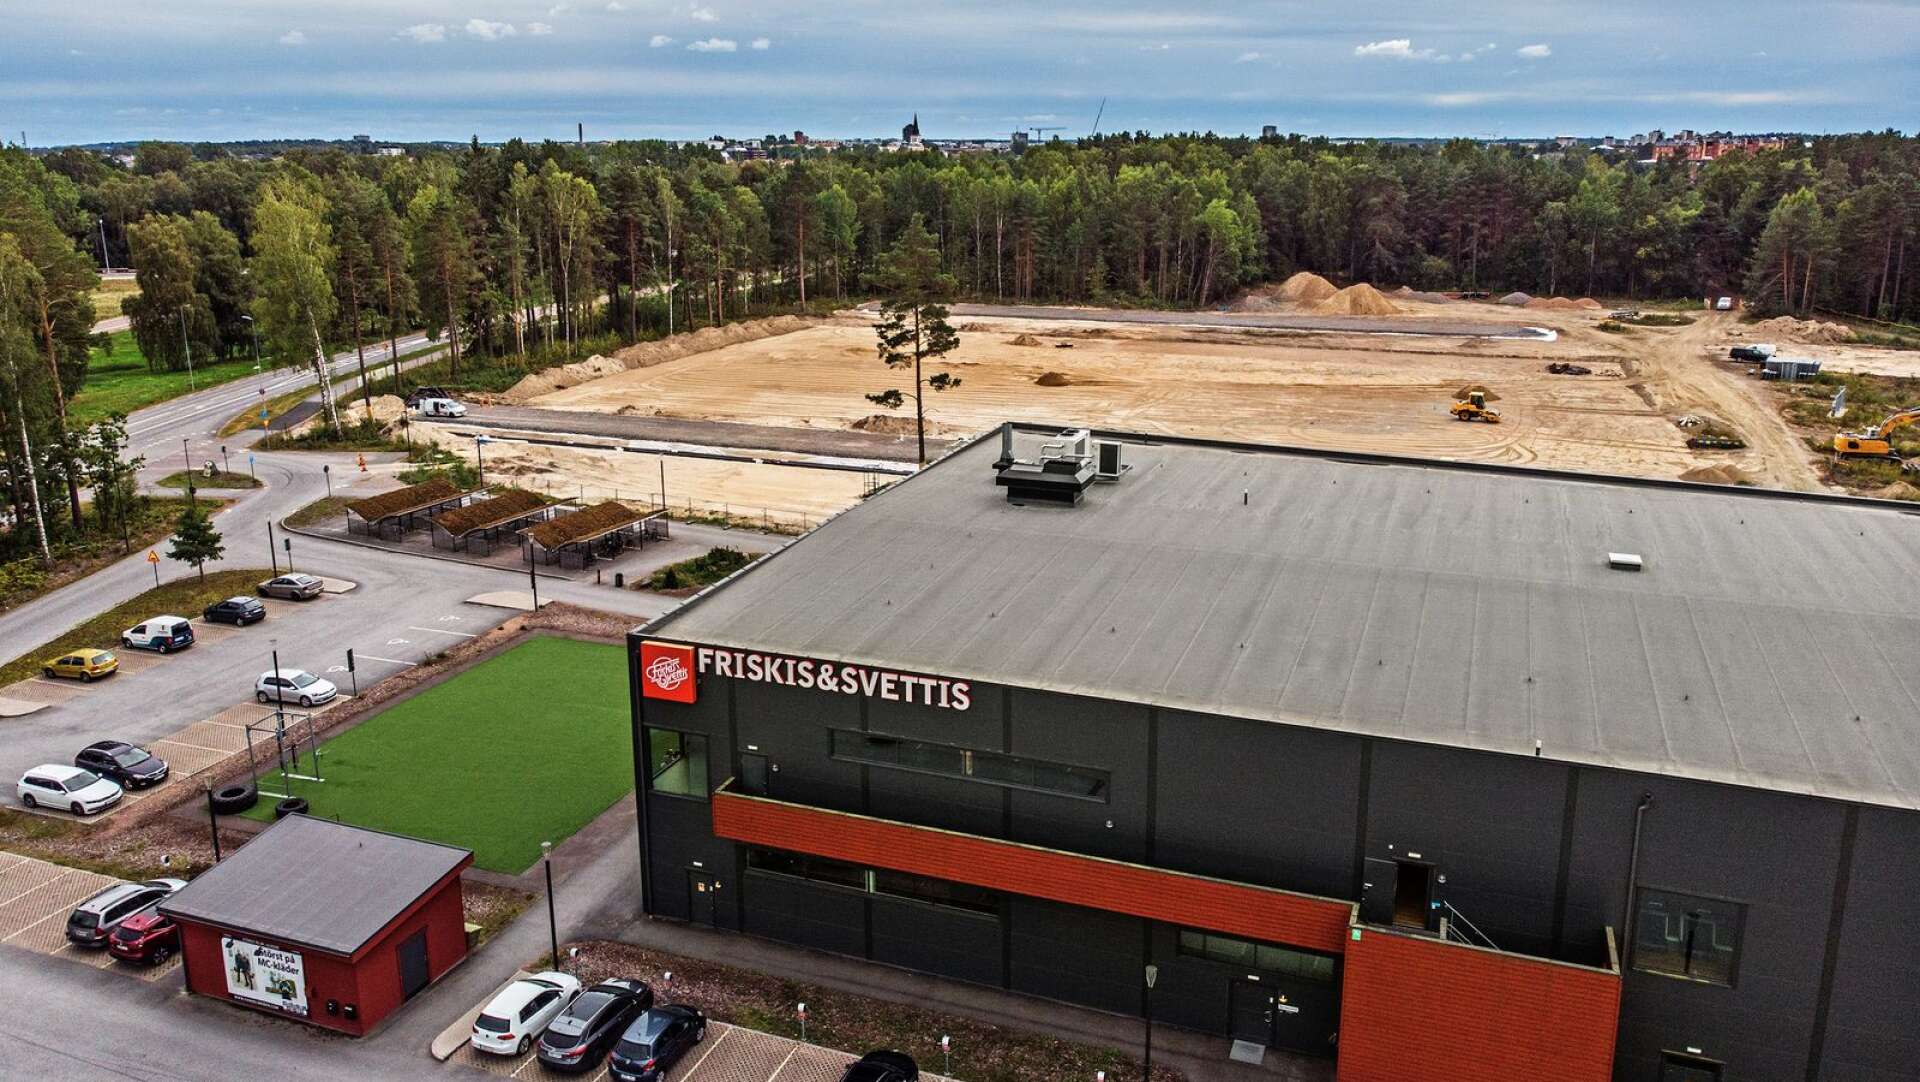 Karlstads kommun söker konstnärer som vill smycka ut den nya arenastaden som växer fram söder om Råtorp.